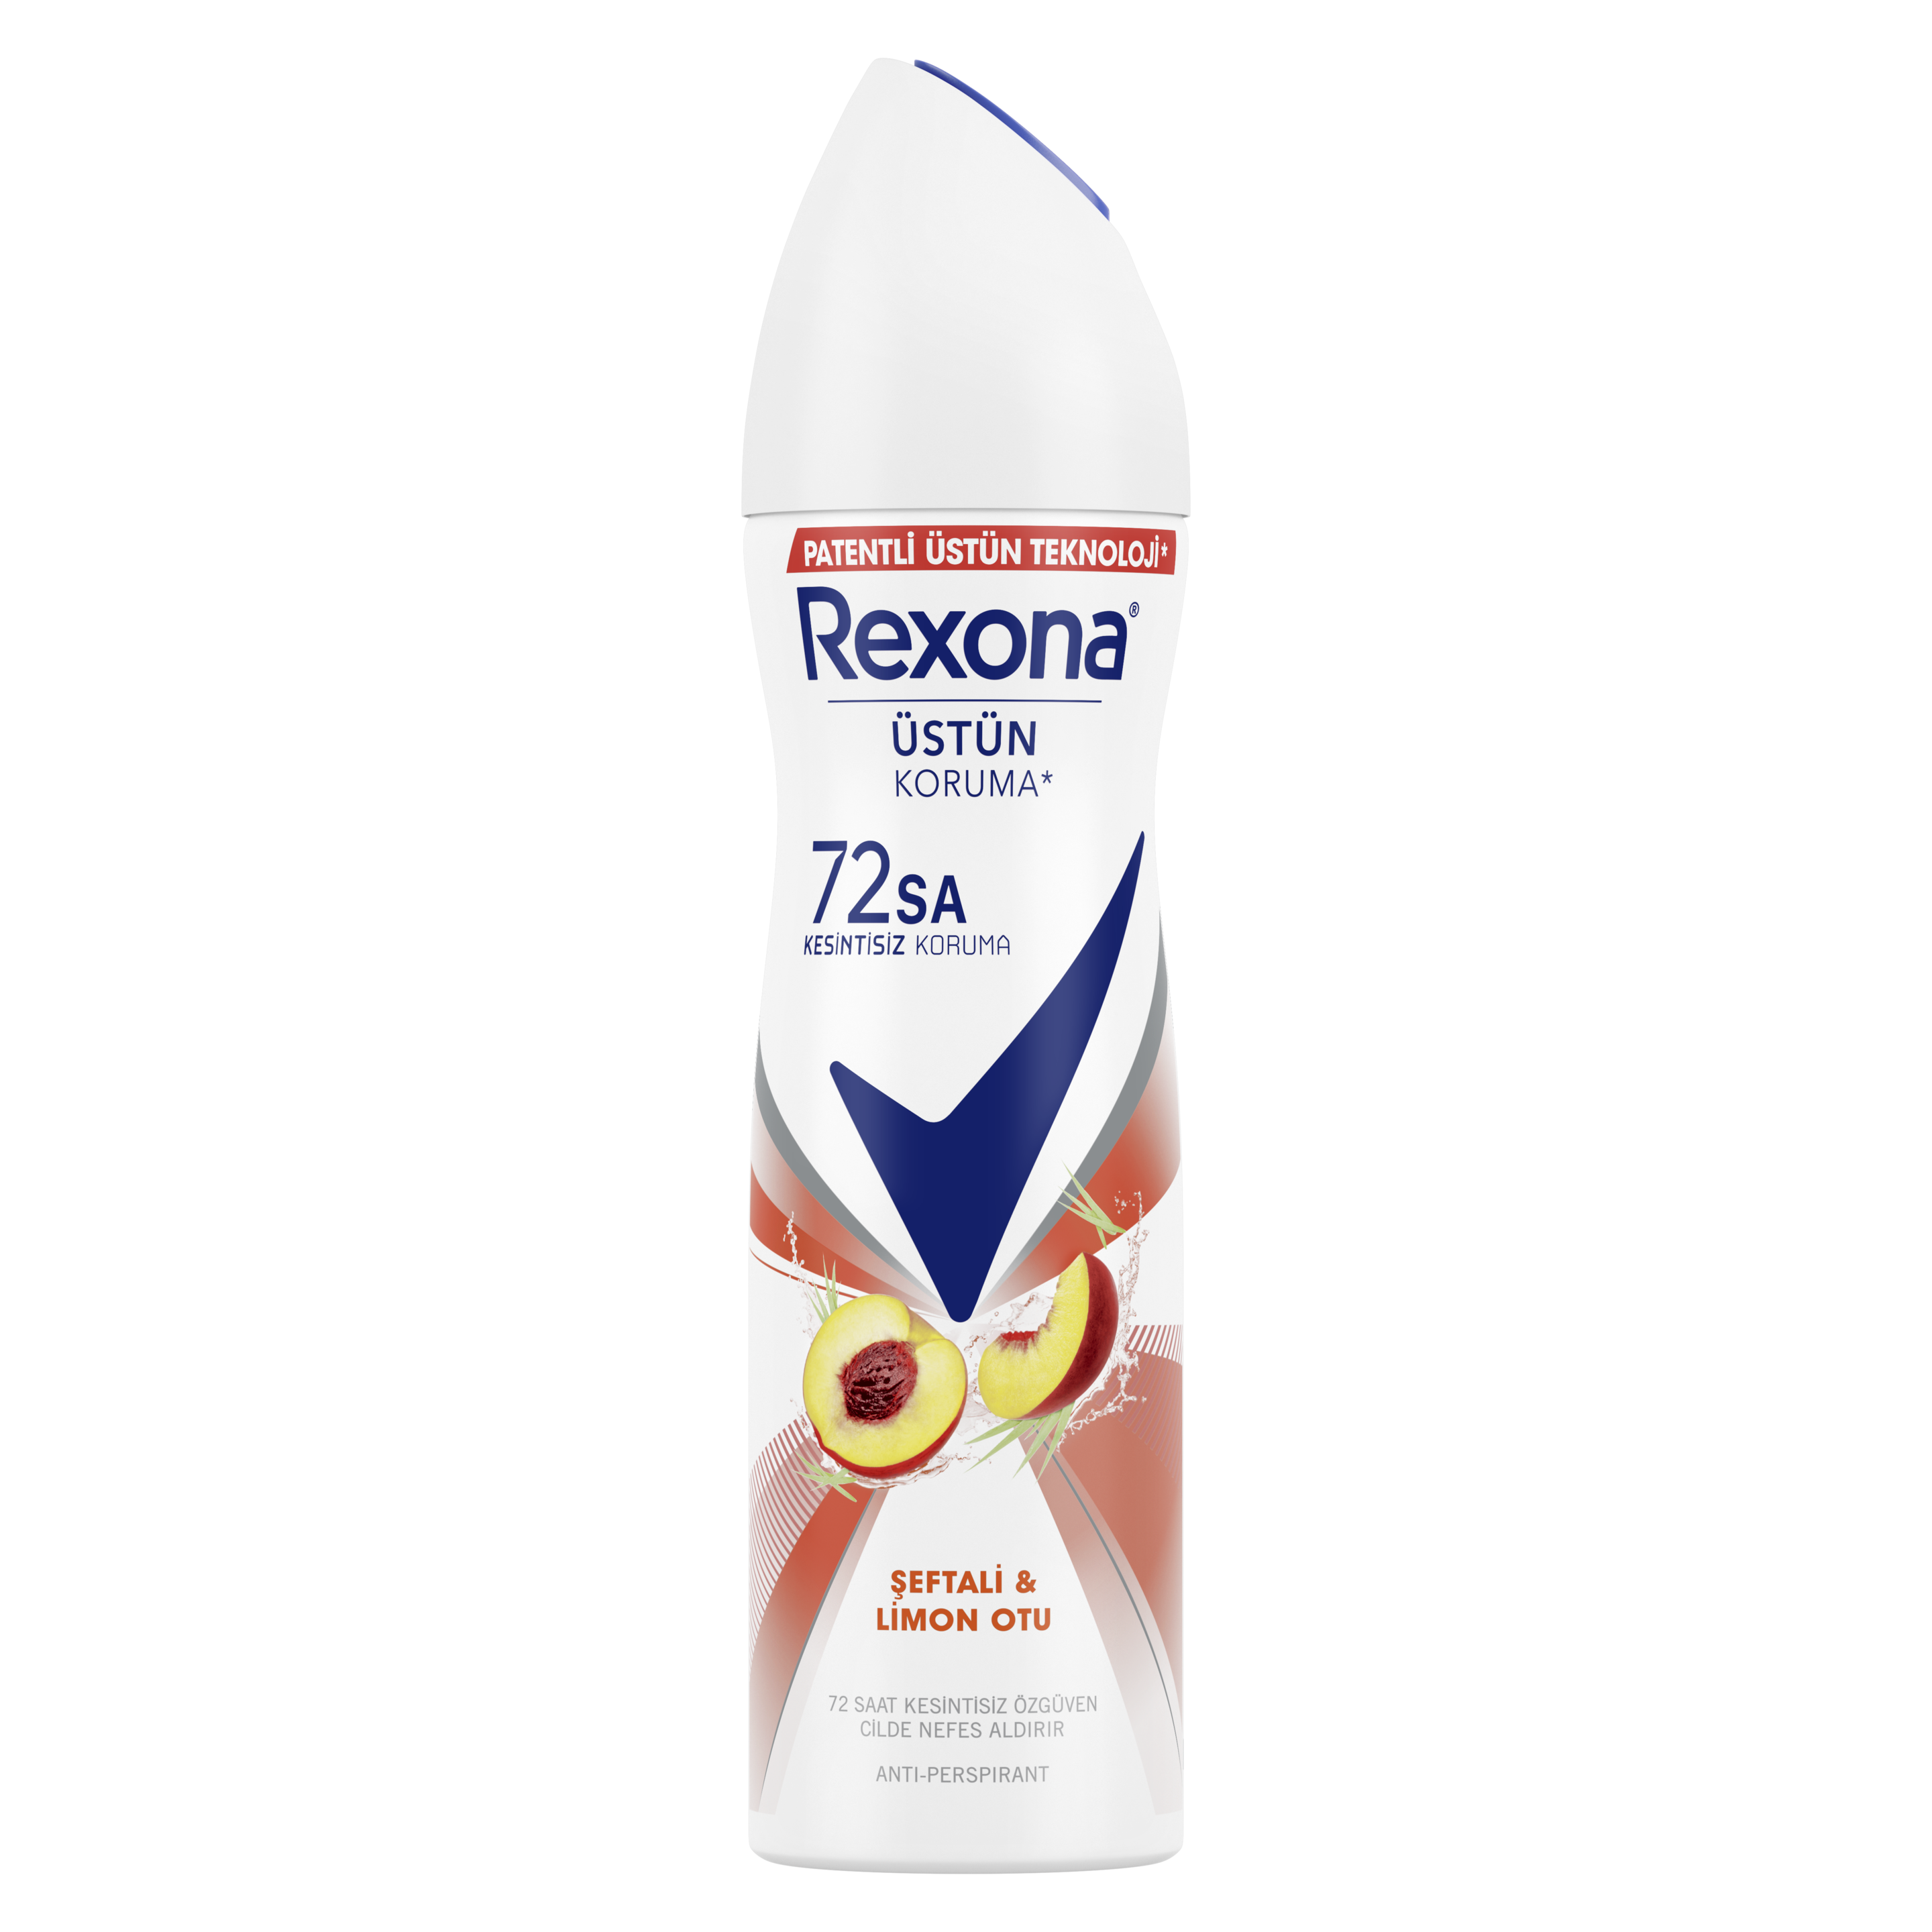 Rexona Seftali & Limon Otu Antiperspirant Kadın Sprey Deodorant 150 ml